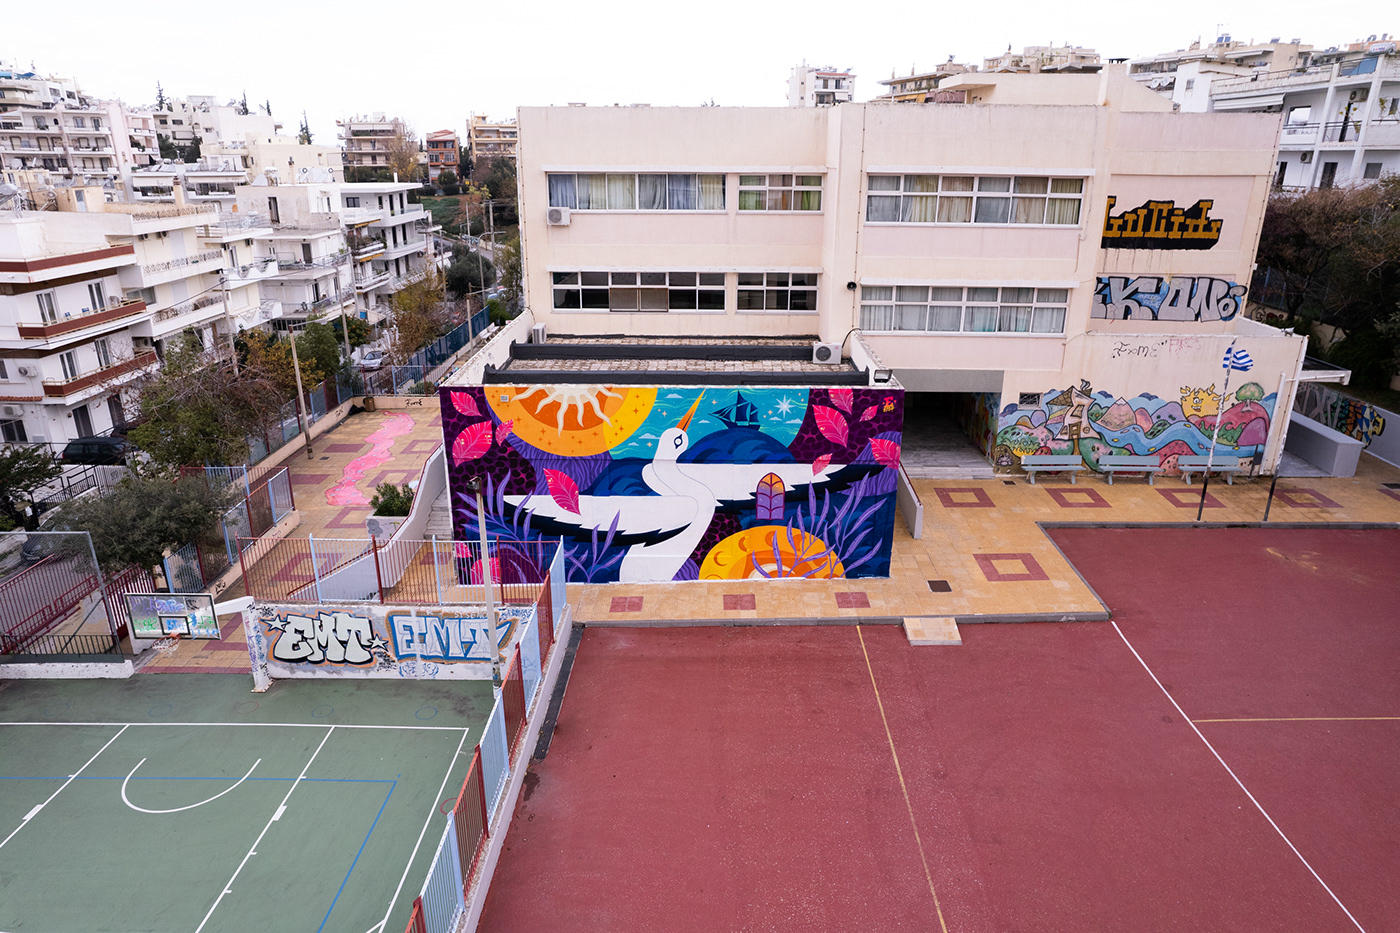 Mural Murals mural art MURALISMO murales streetart Street Art  graff Graffiti graffiti art